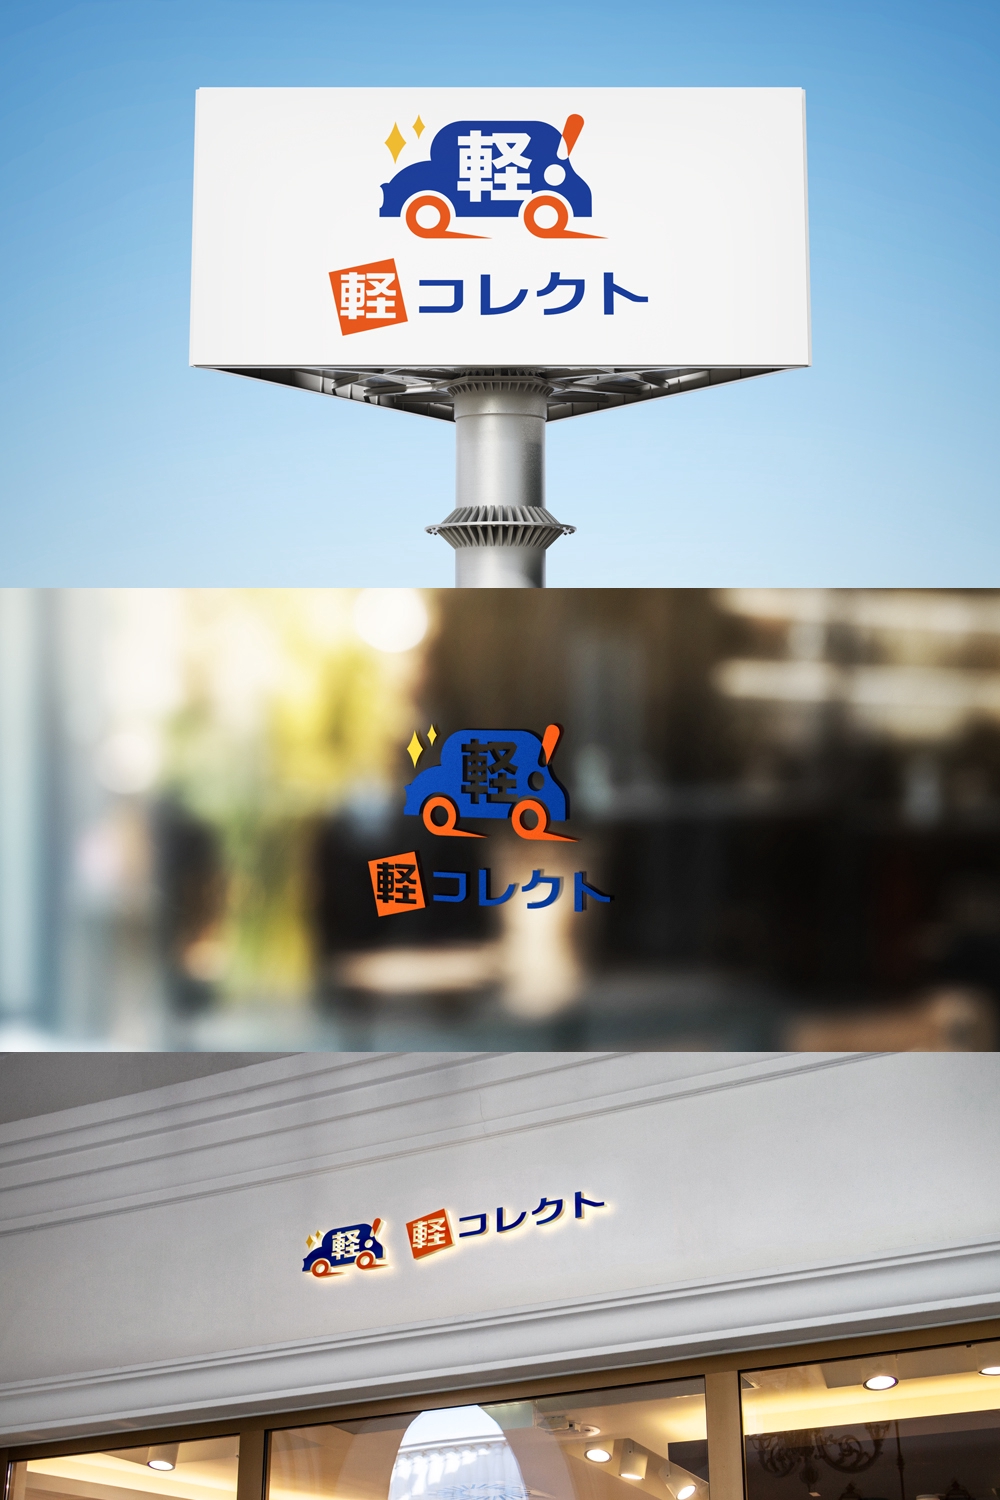 軽自動車販売店「軽コレクト」のロゴ